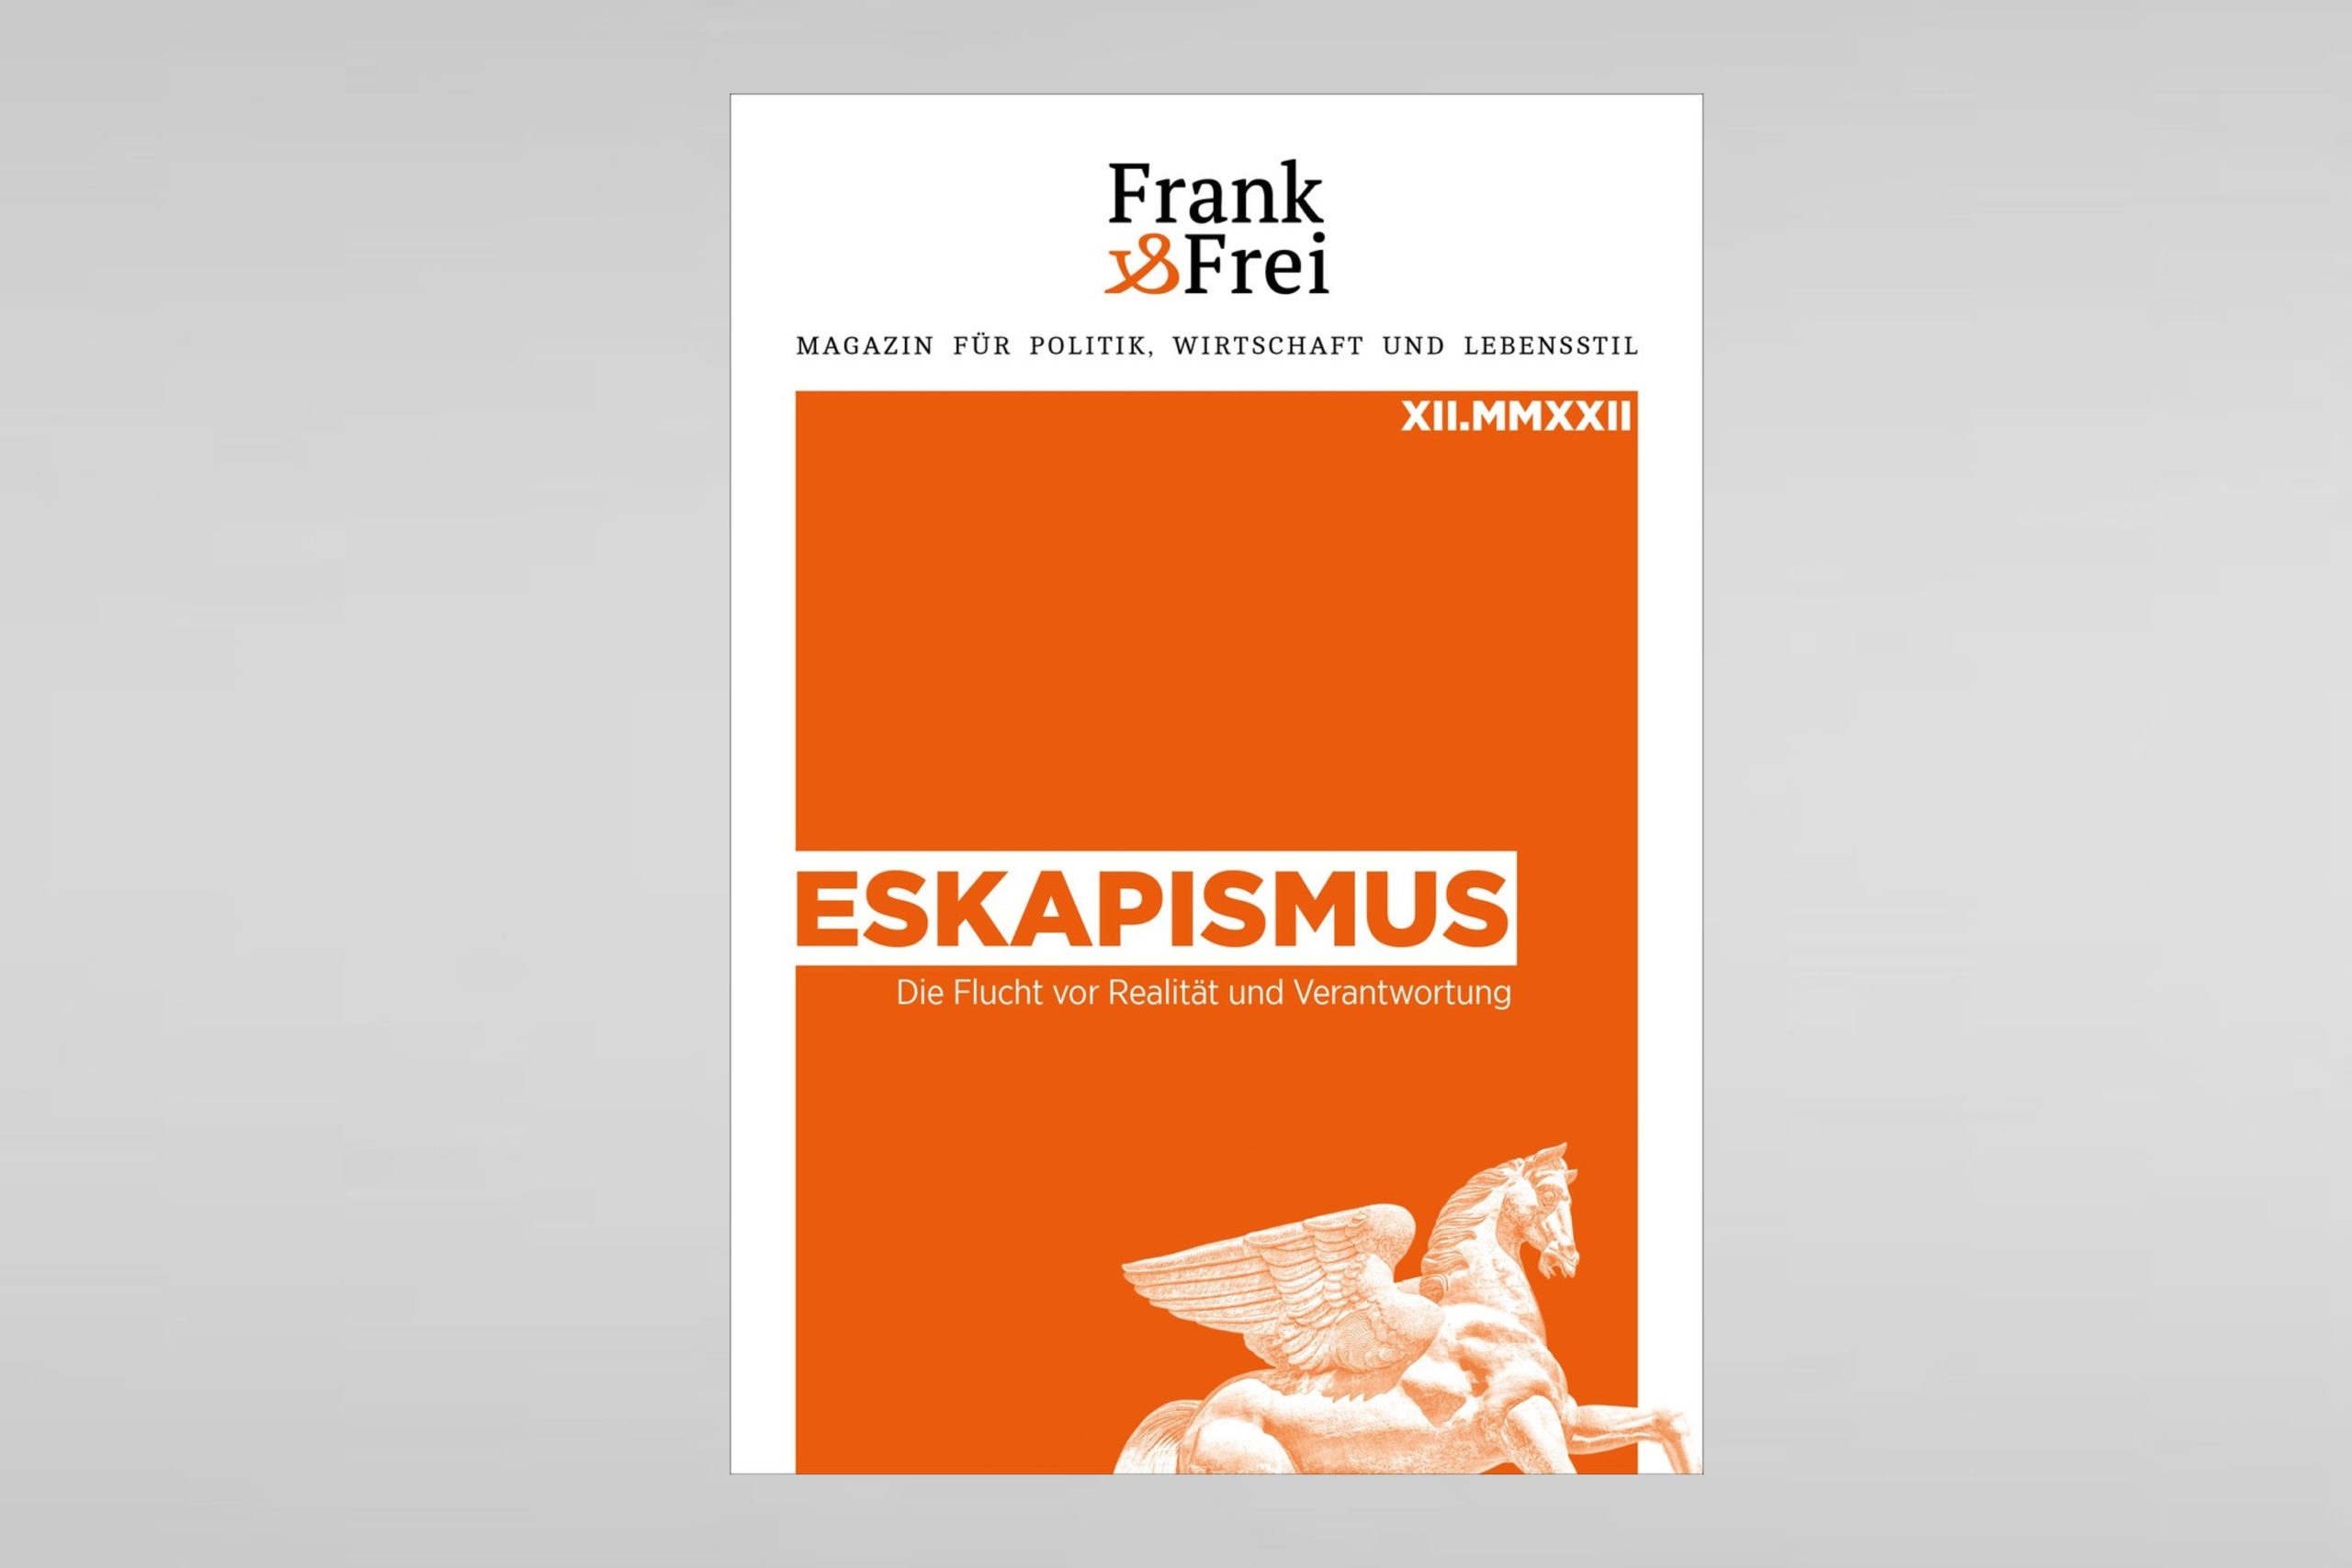 Frank&Frei XIl: Eskapismus - Die Flucht vor Realität und Verantwortung